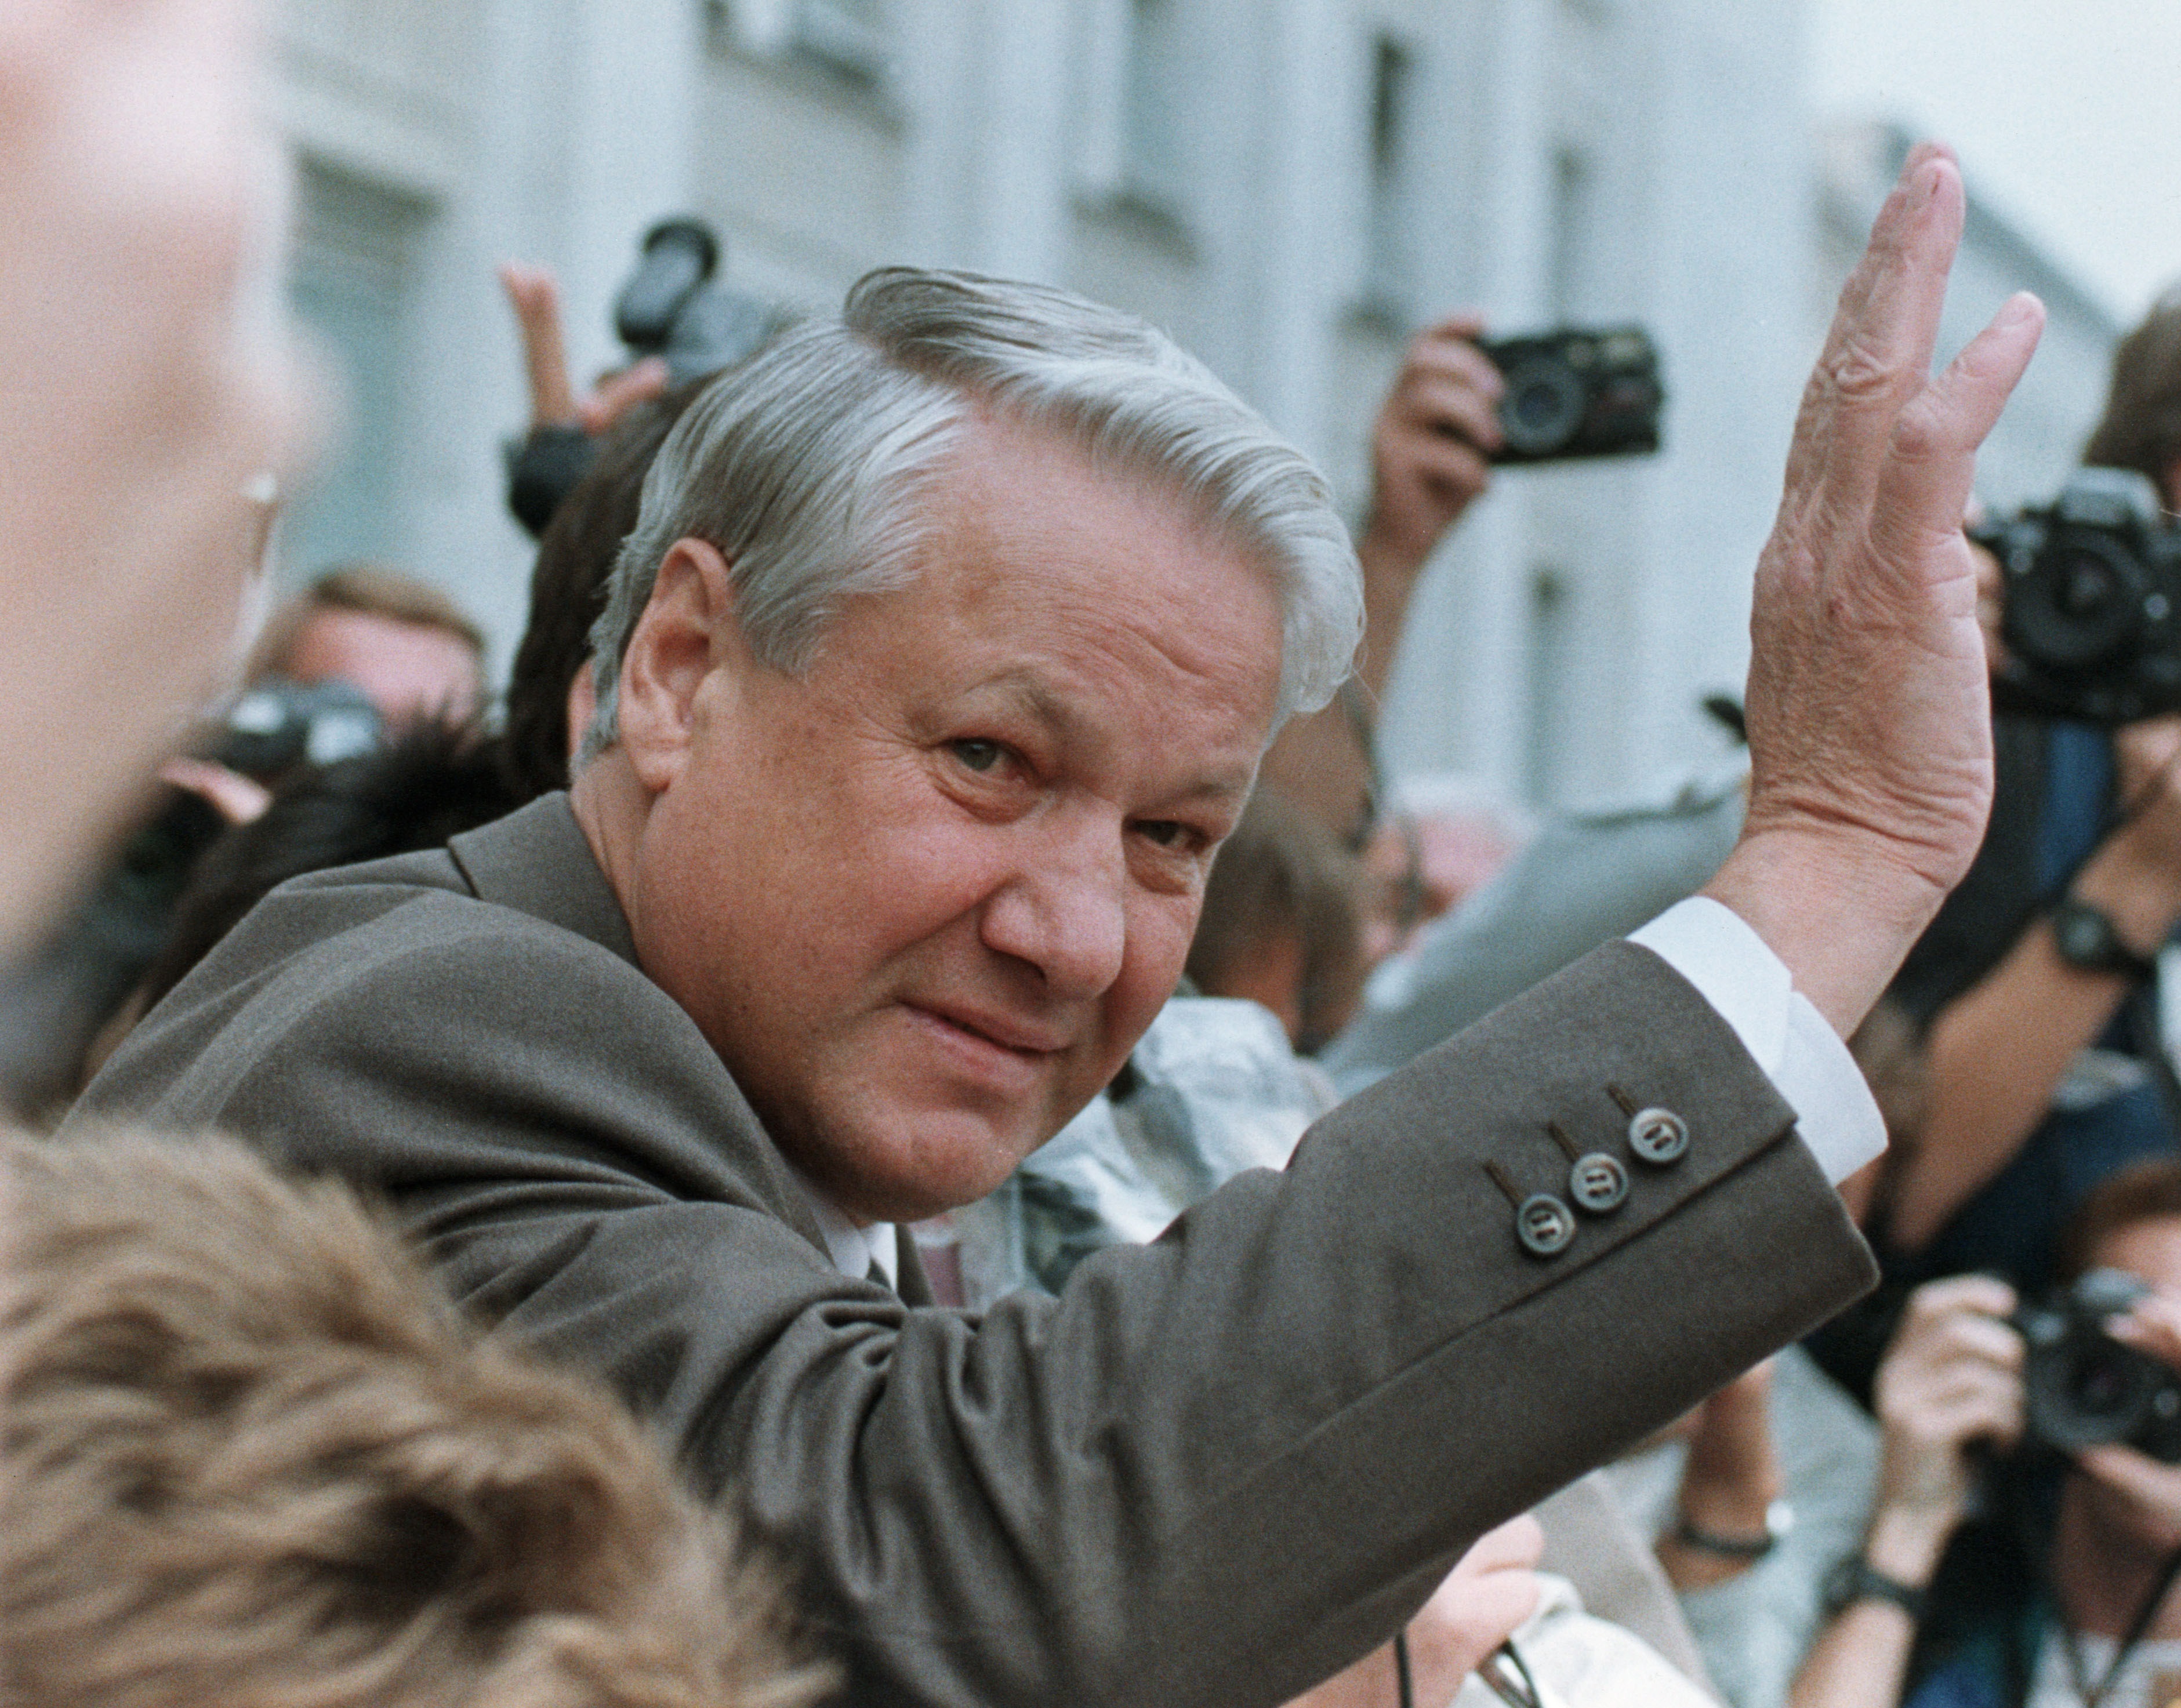 بوريس يلتسين -أول رئيس للاتحاد الروسي (1991-1999) (رويترز)